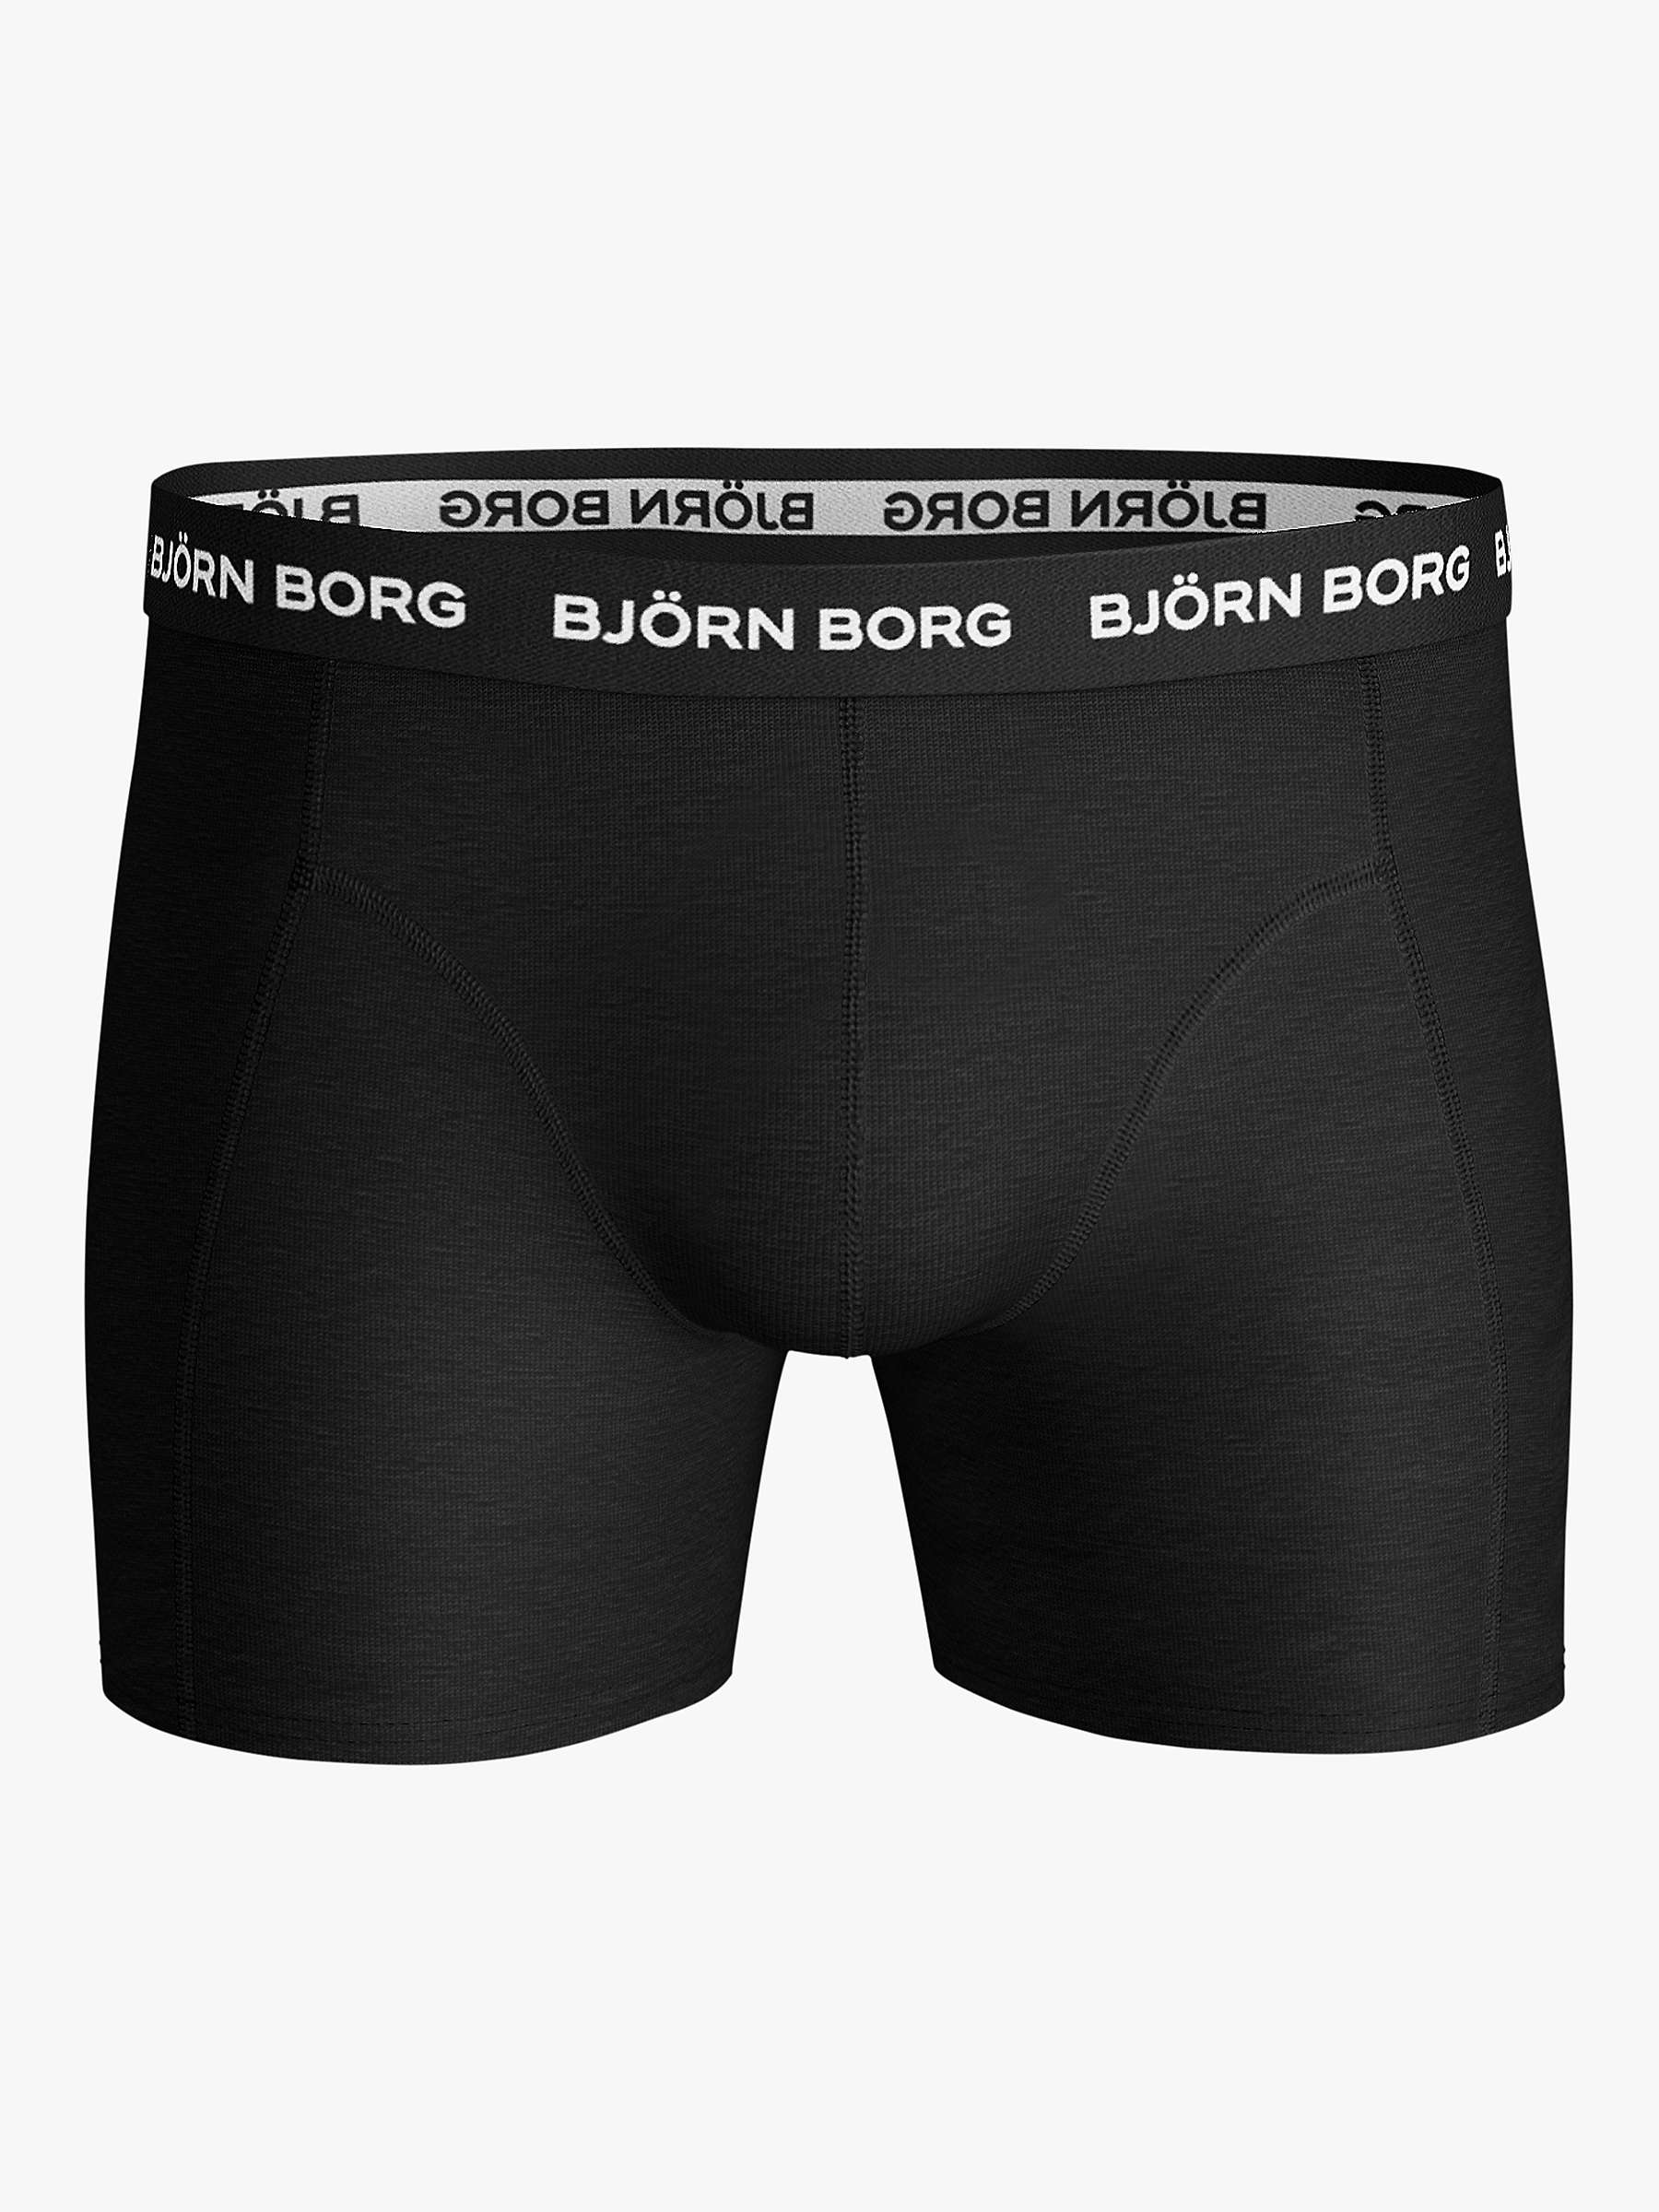 Buy Björn Borg Solid Trunks, Pack of 5, Black Online at johnlewis.com